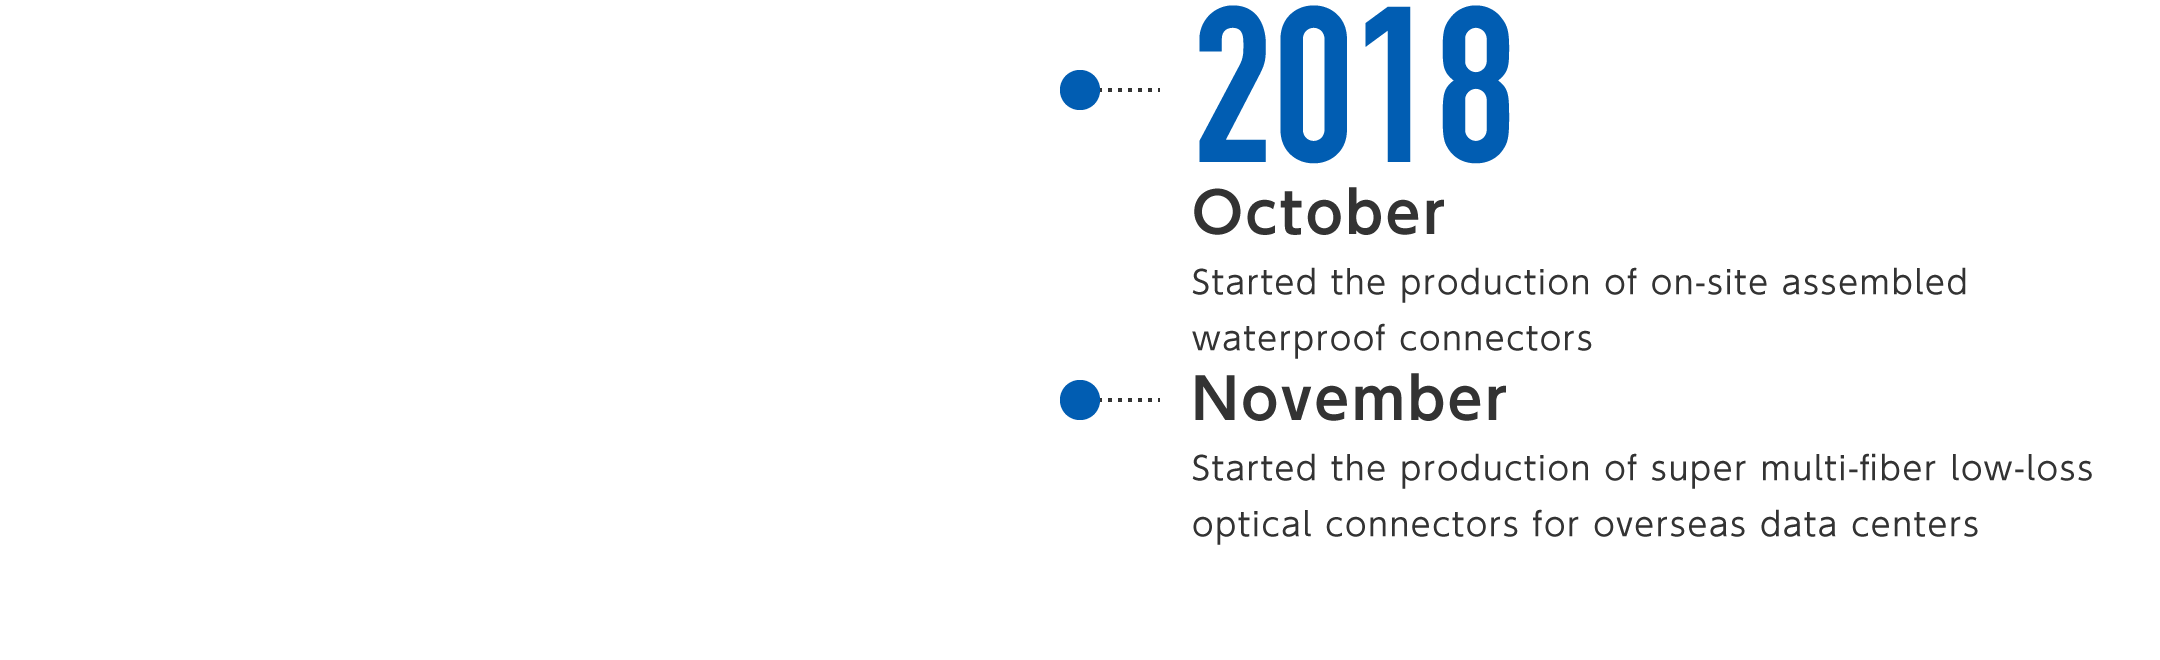 2018年10月-現地組立型防水コネクタの製造を開始、11月-海外データセンタ向け超多心低損失光コネクタの製造を開始